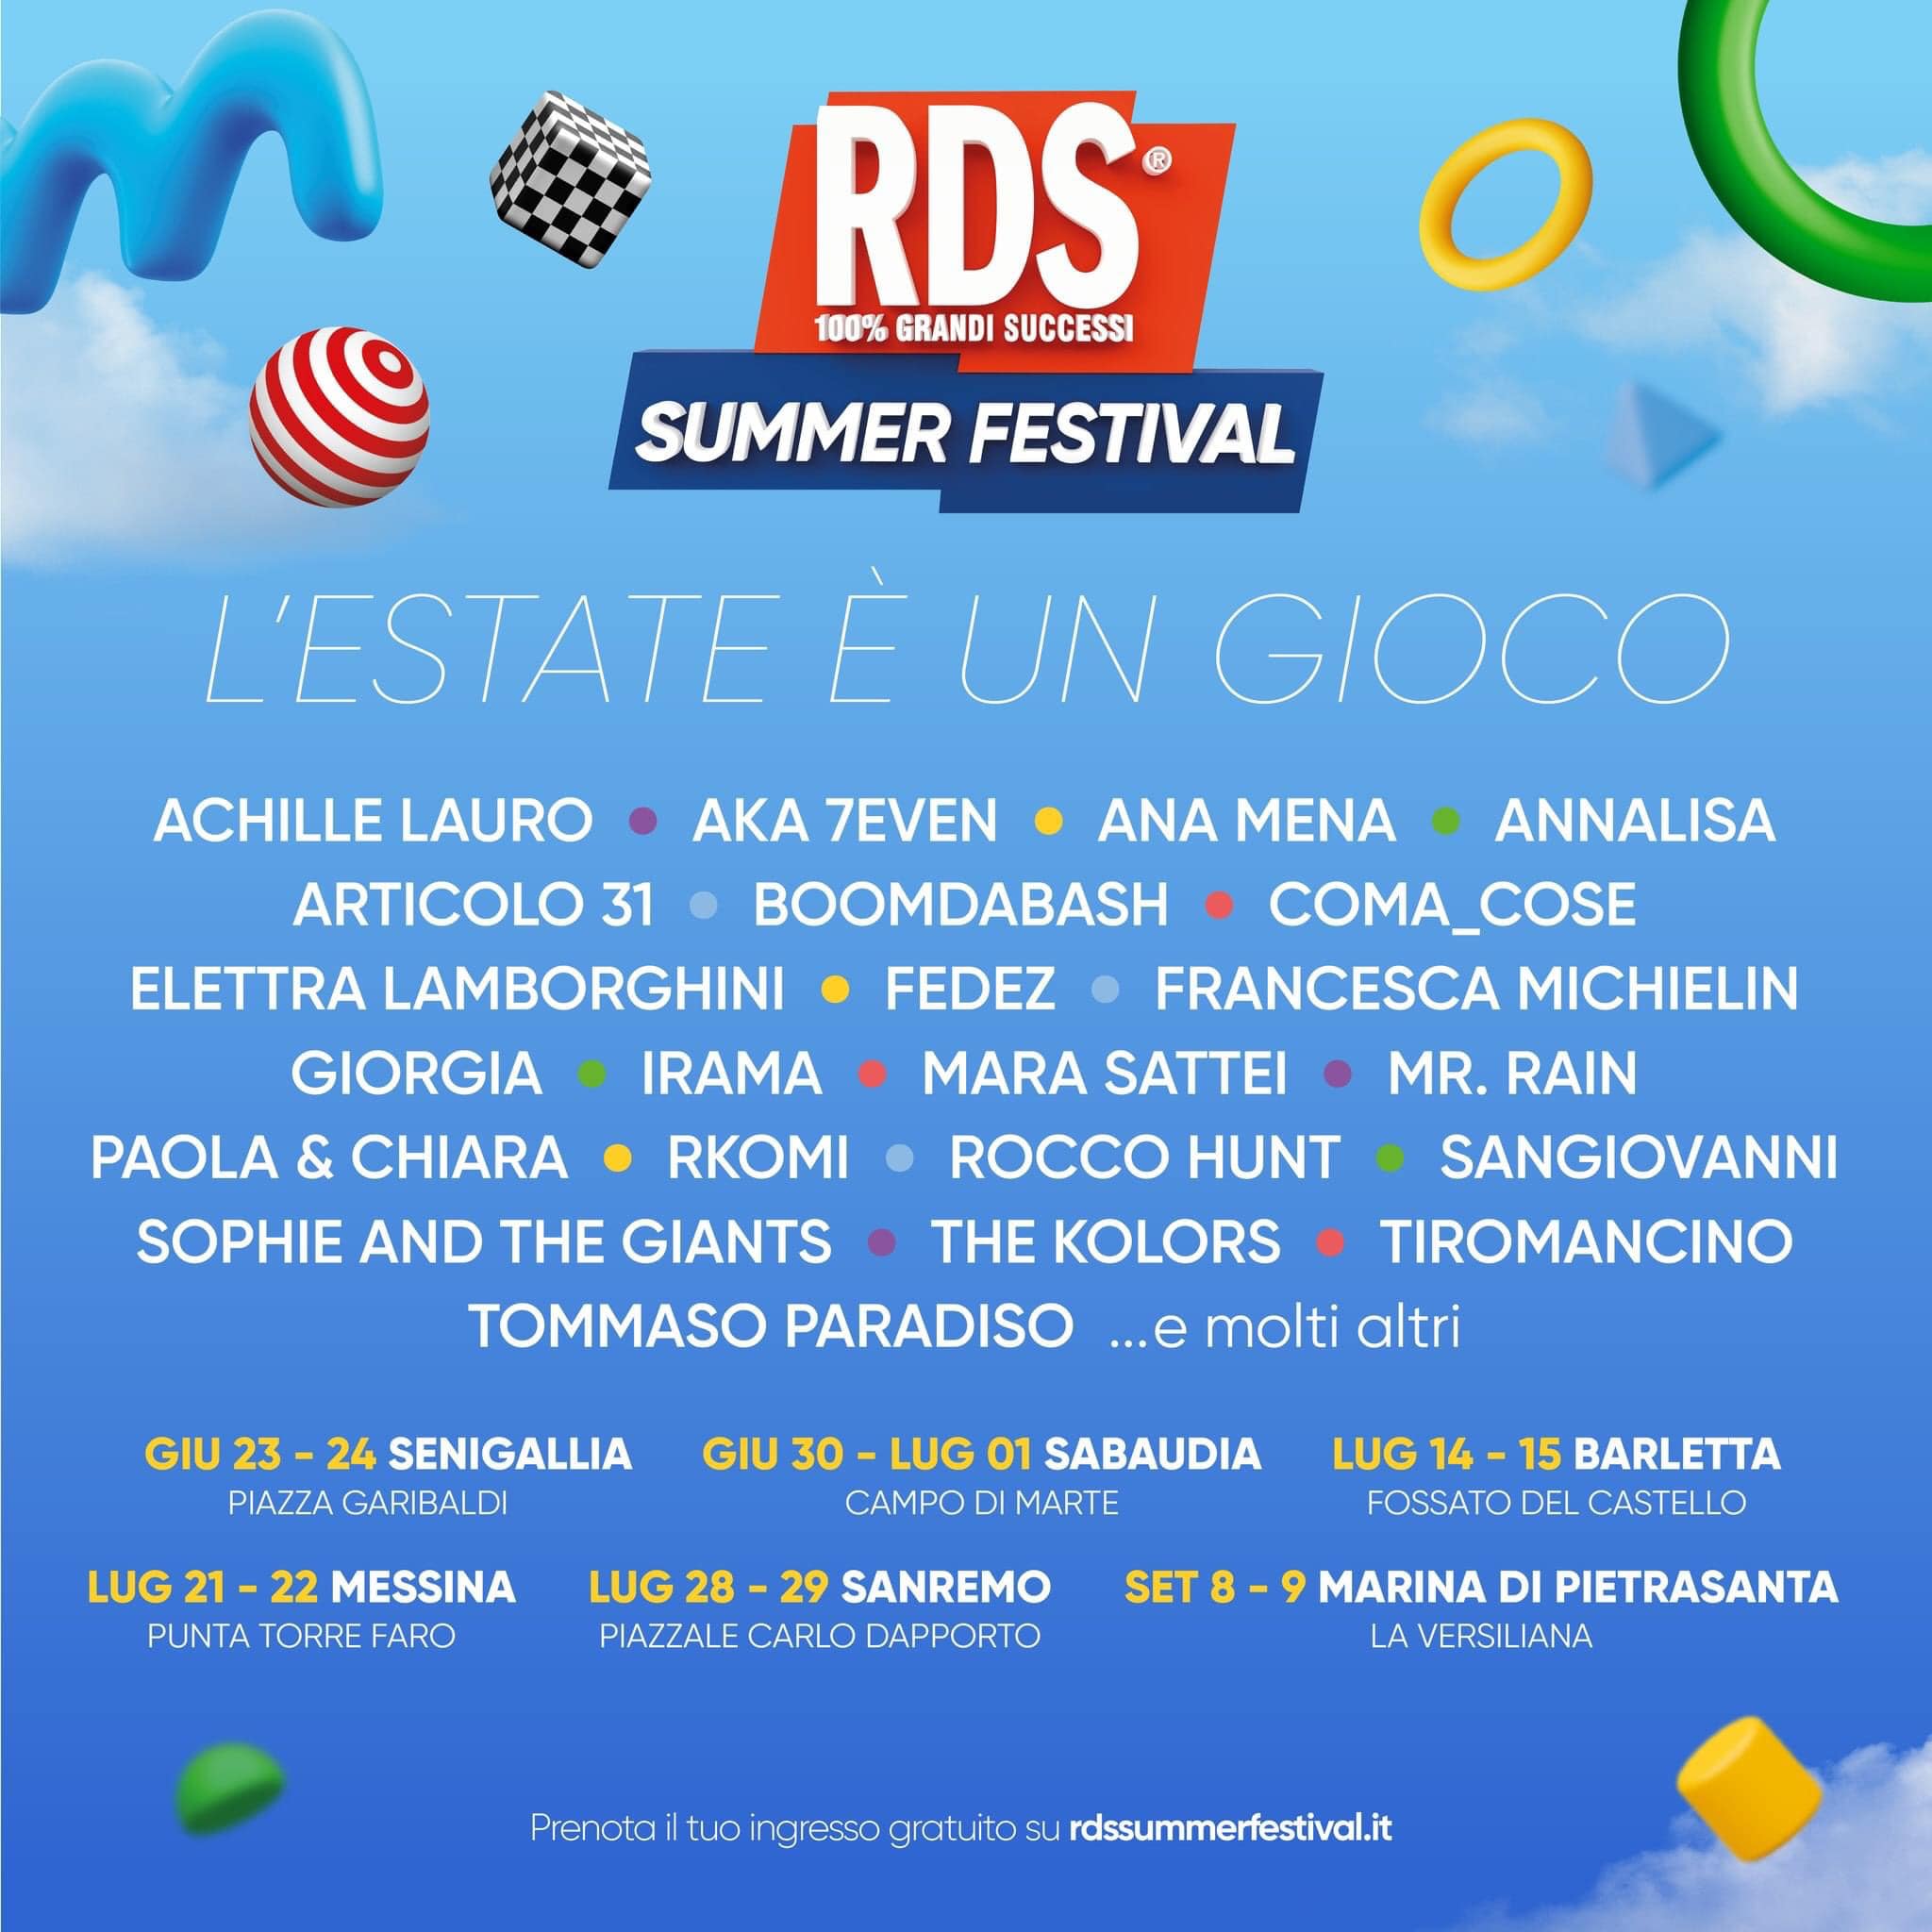 RDS Summer Festival, i cantanti che si esibiranno a Messina